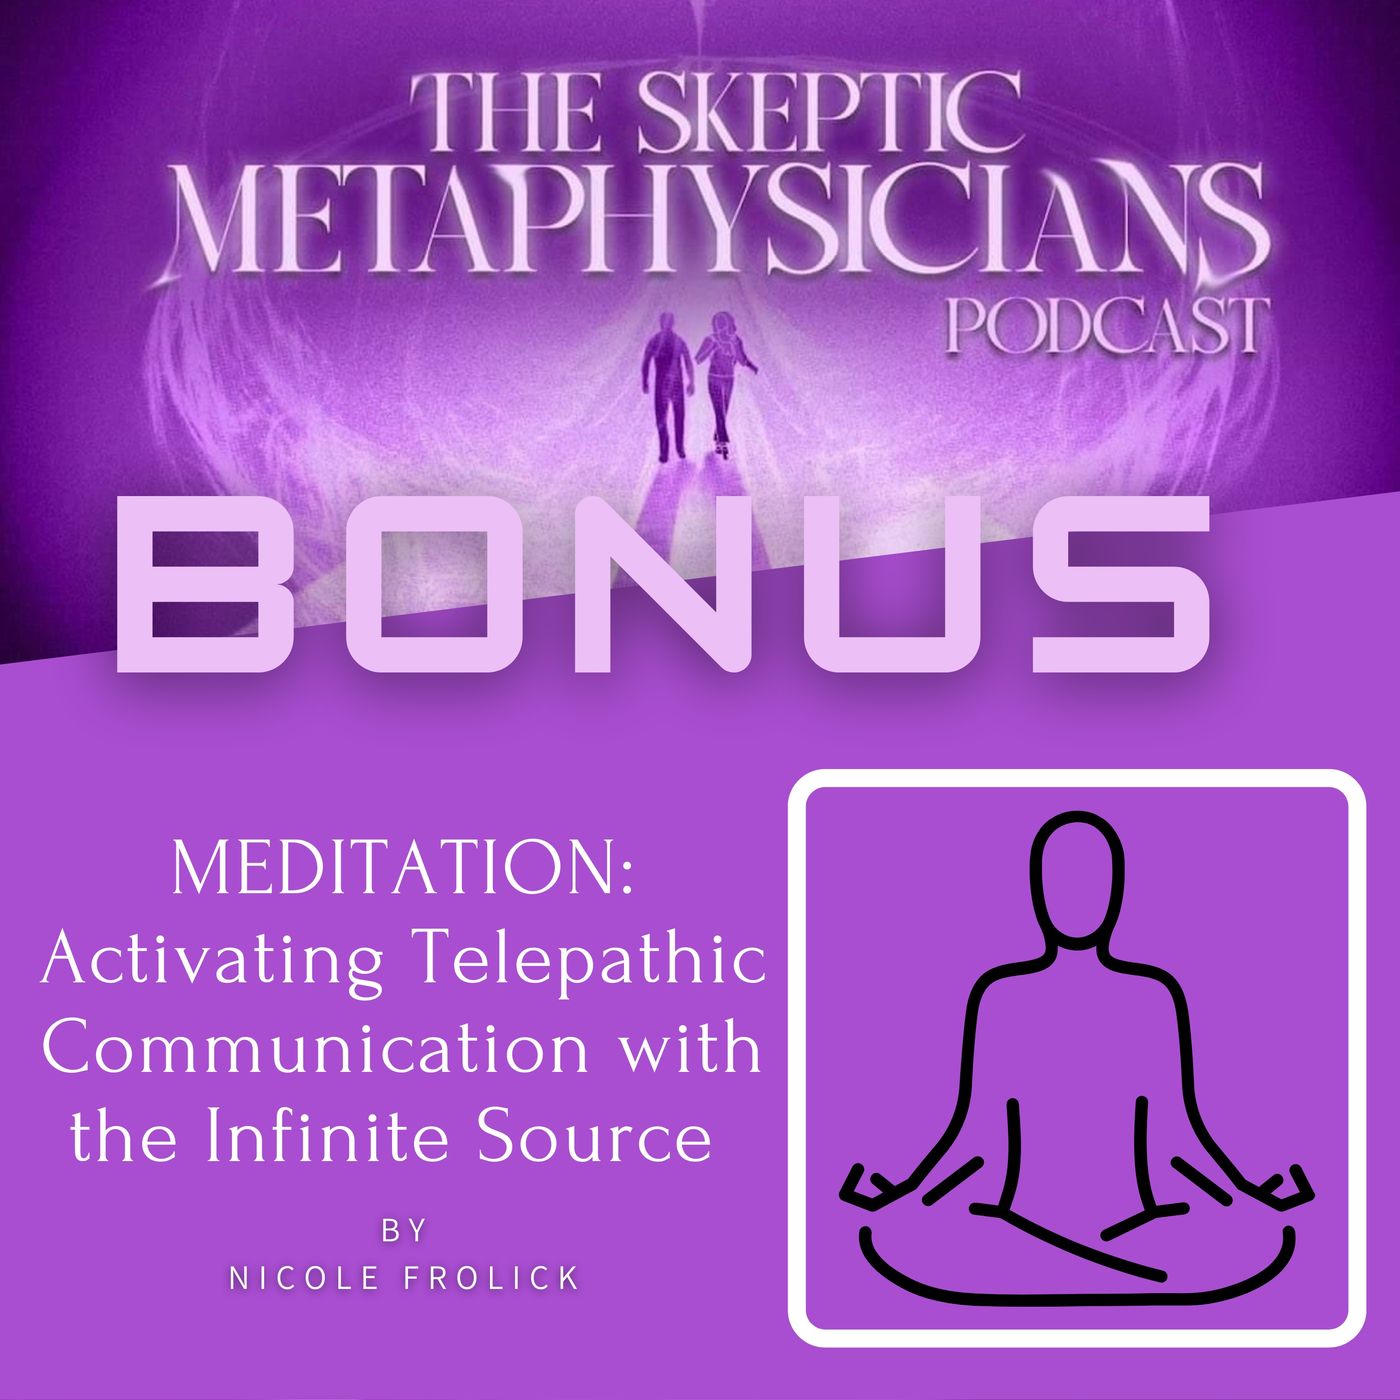 MEDITATION: Activating Telepathic Communication - Nicole Frolick Image